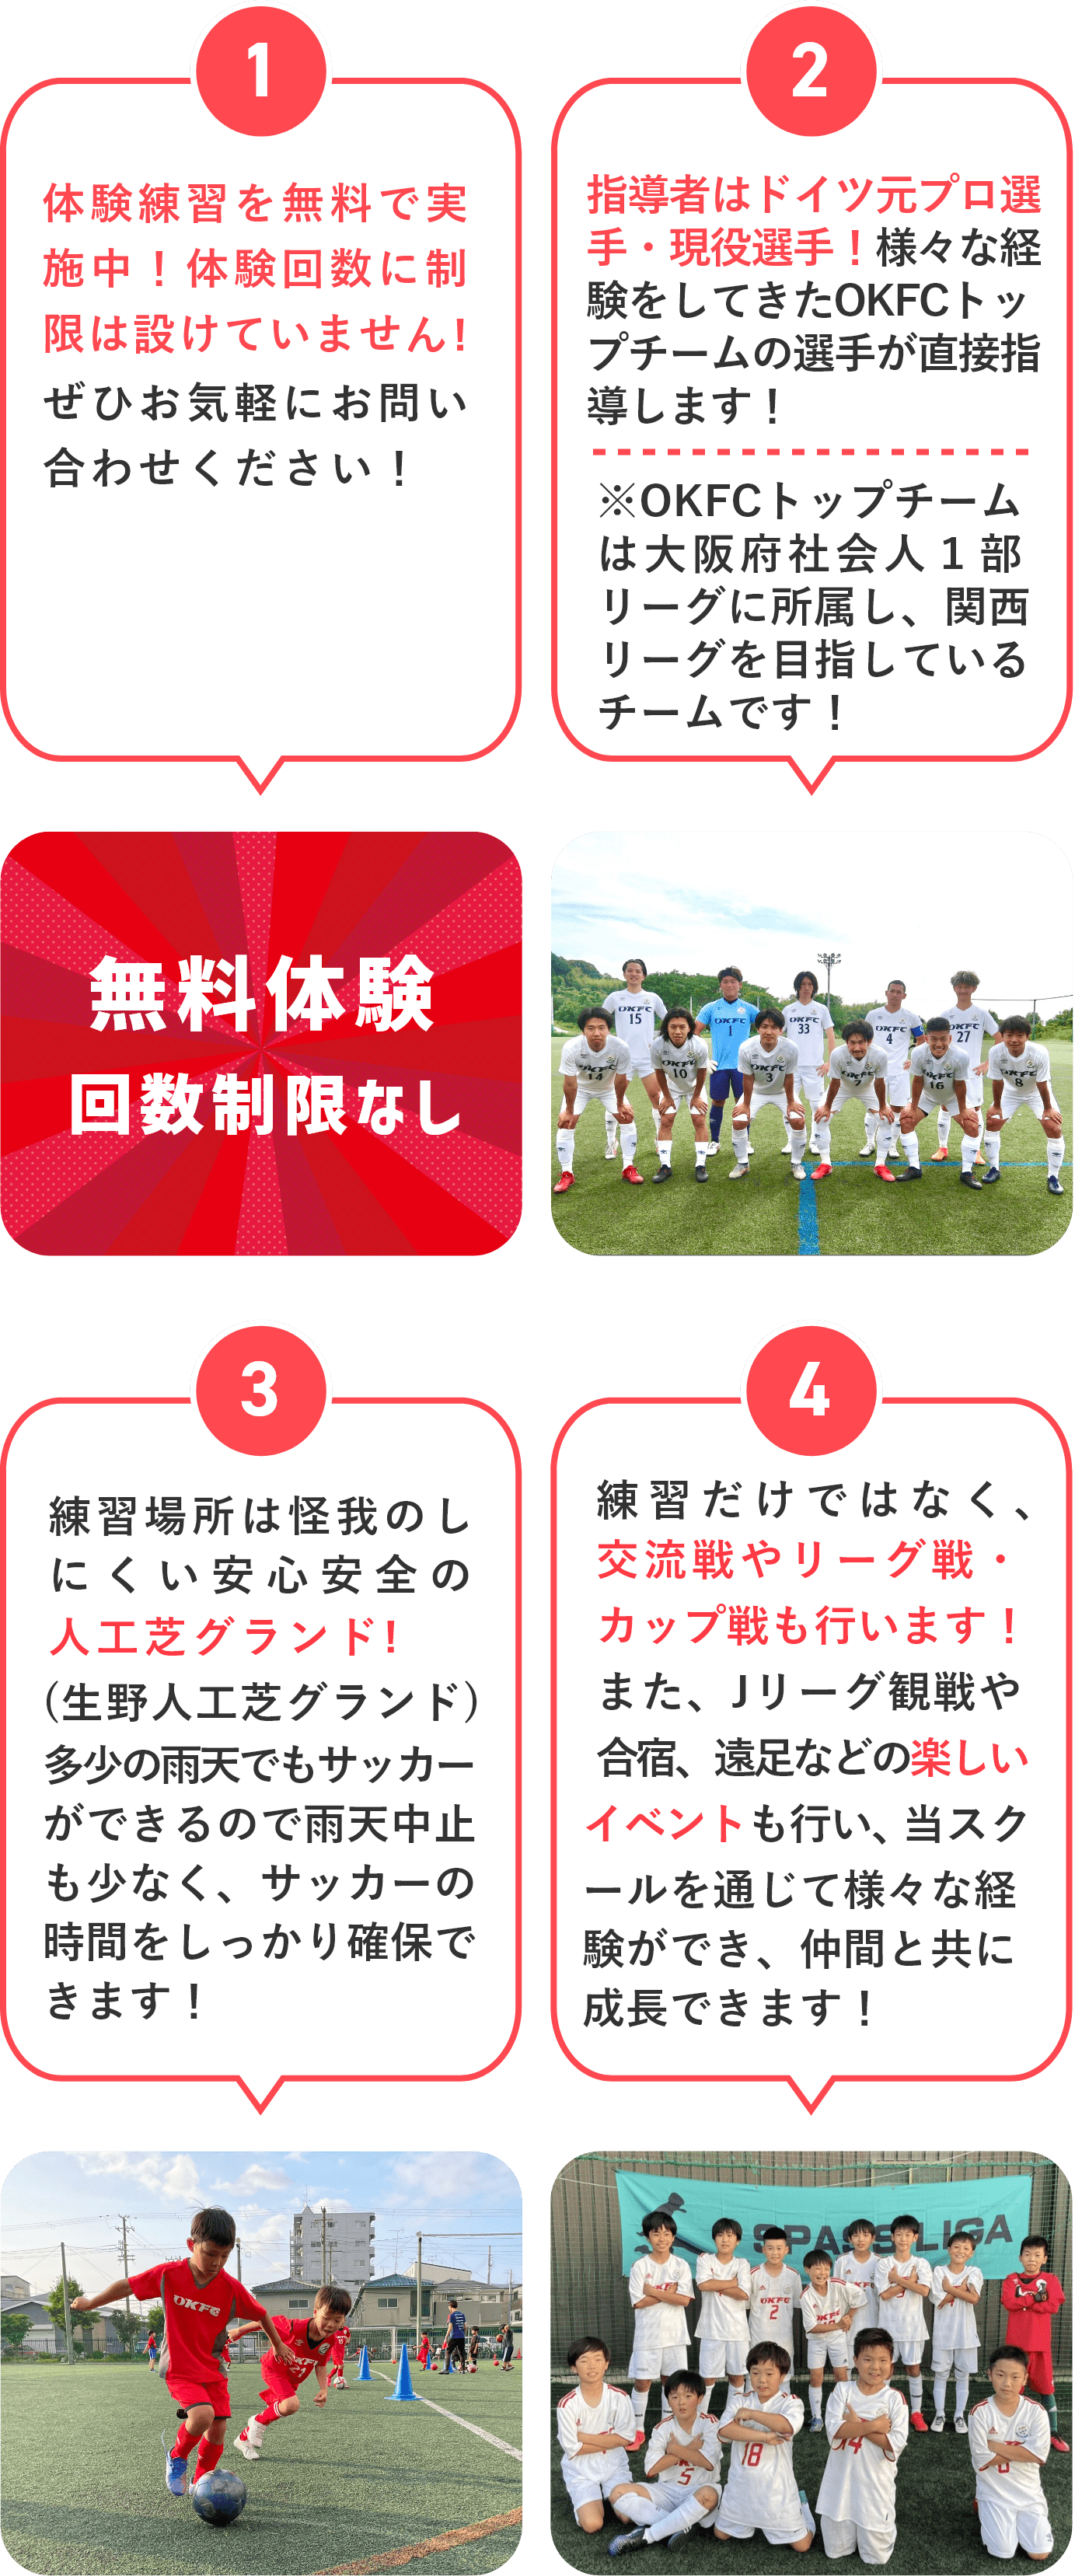 OKFCサッカースクールのここがいい!!